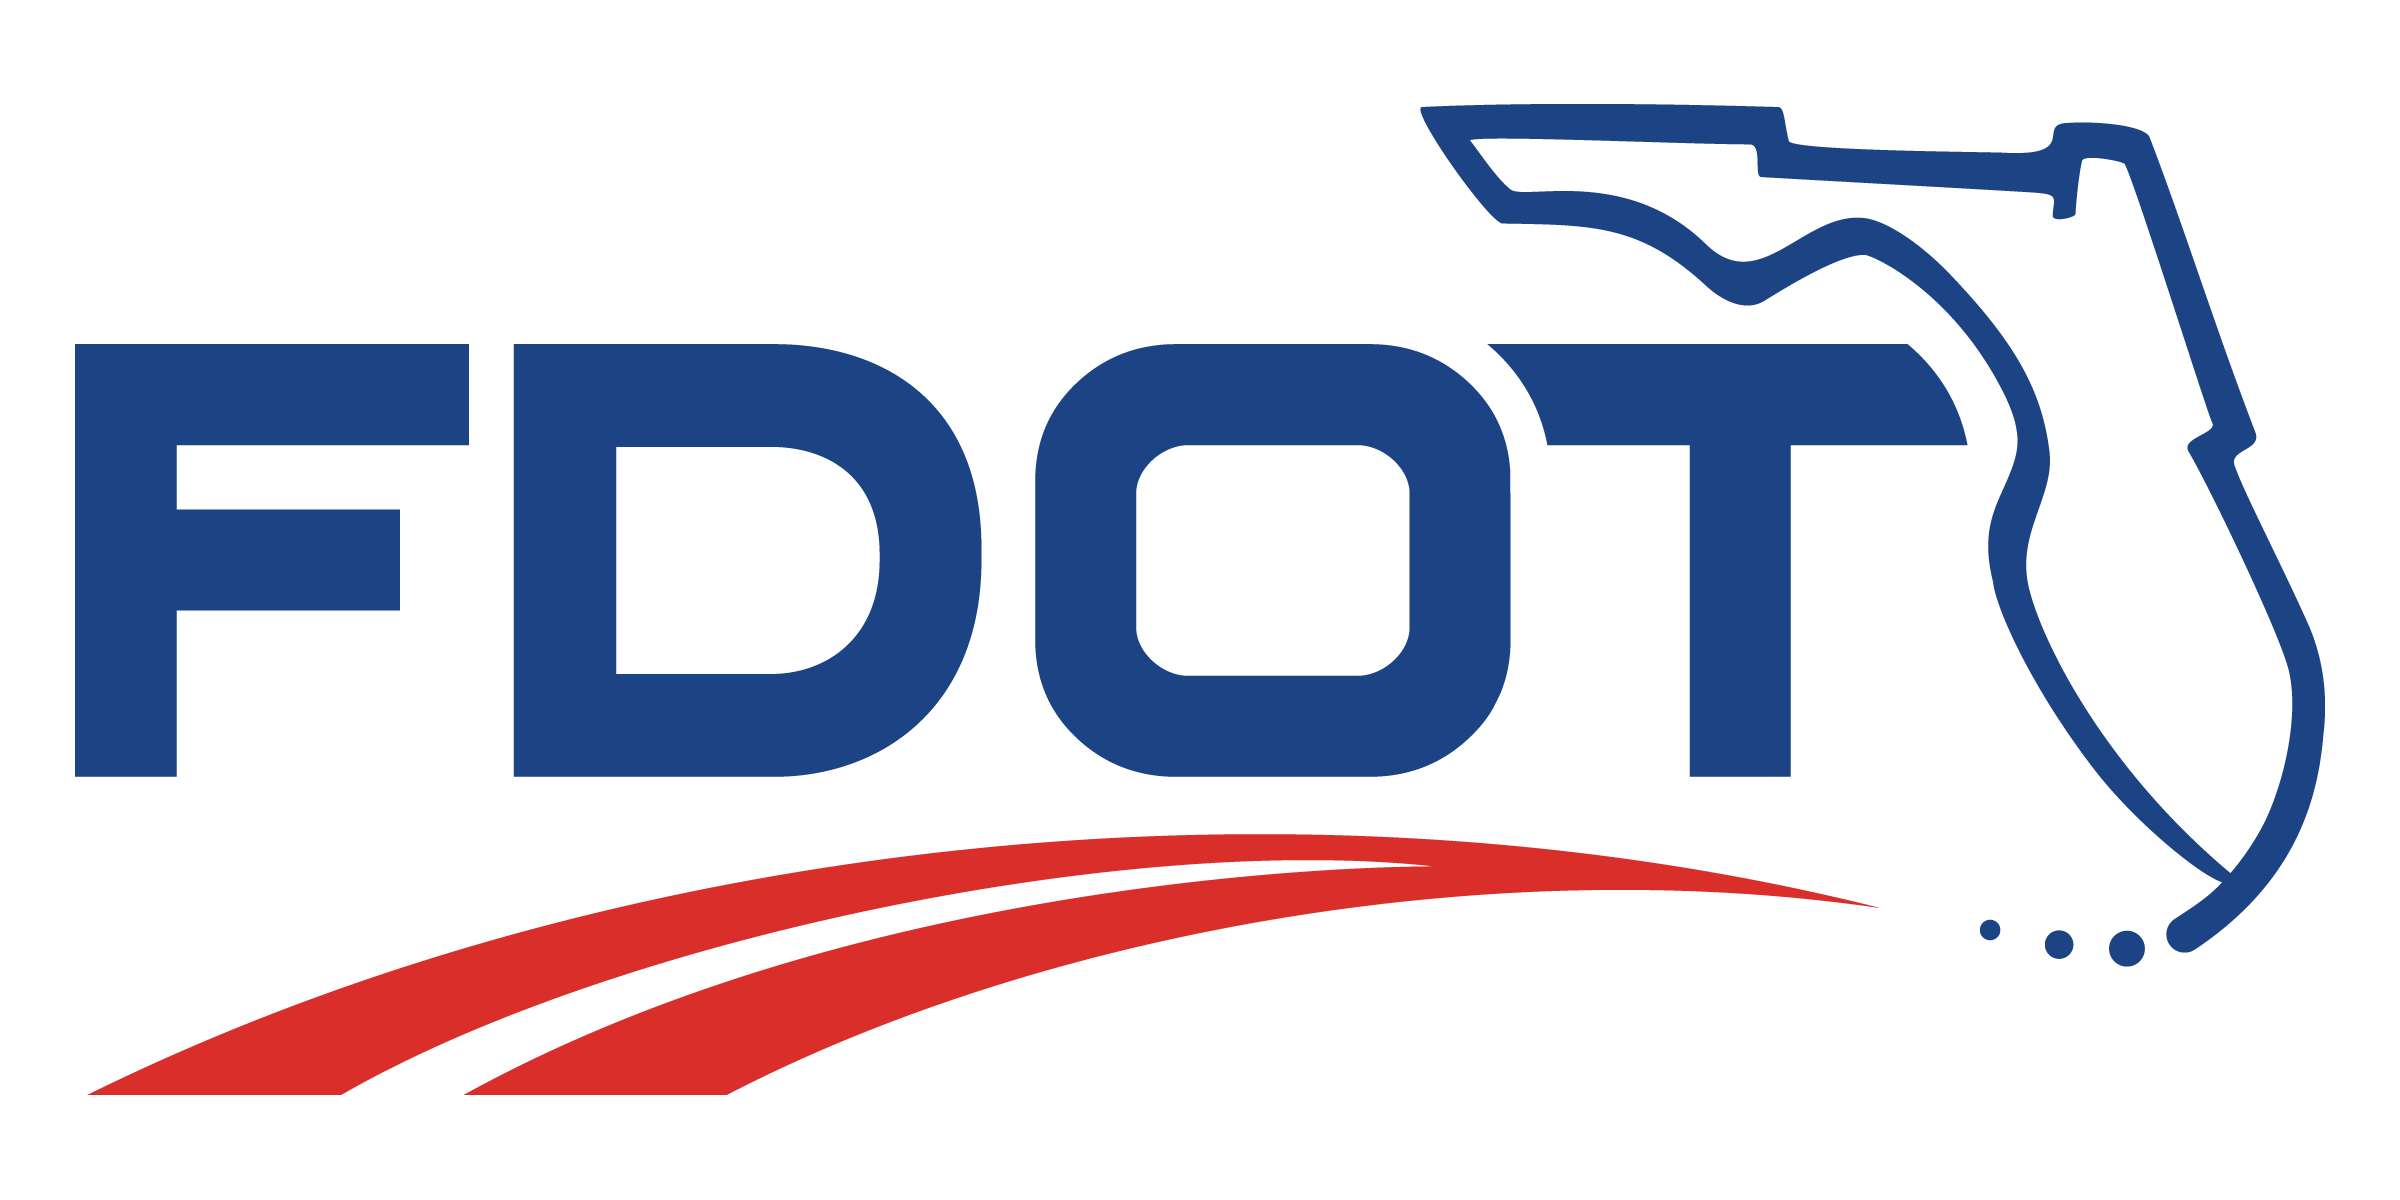 FDOT Logo - FDOT Logos